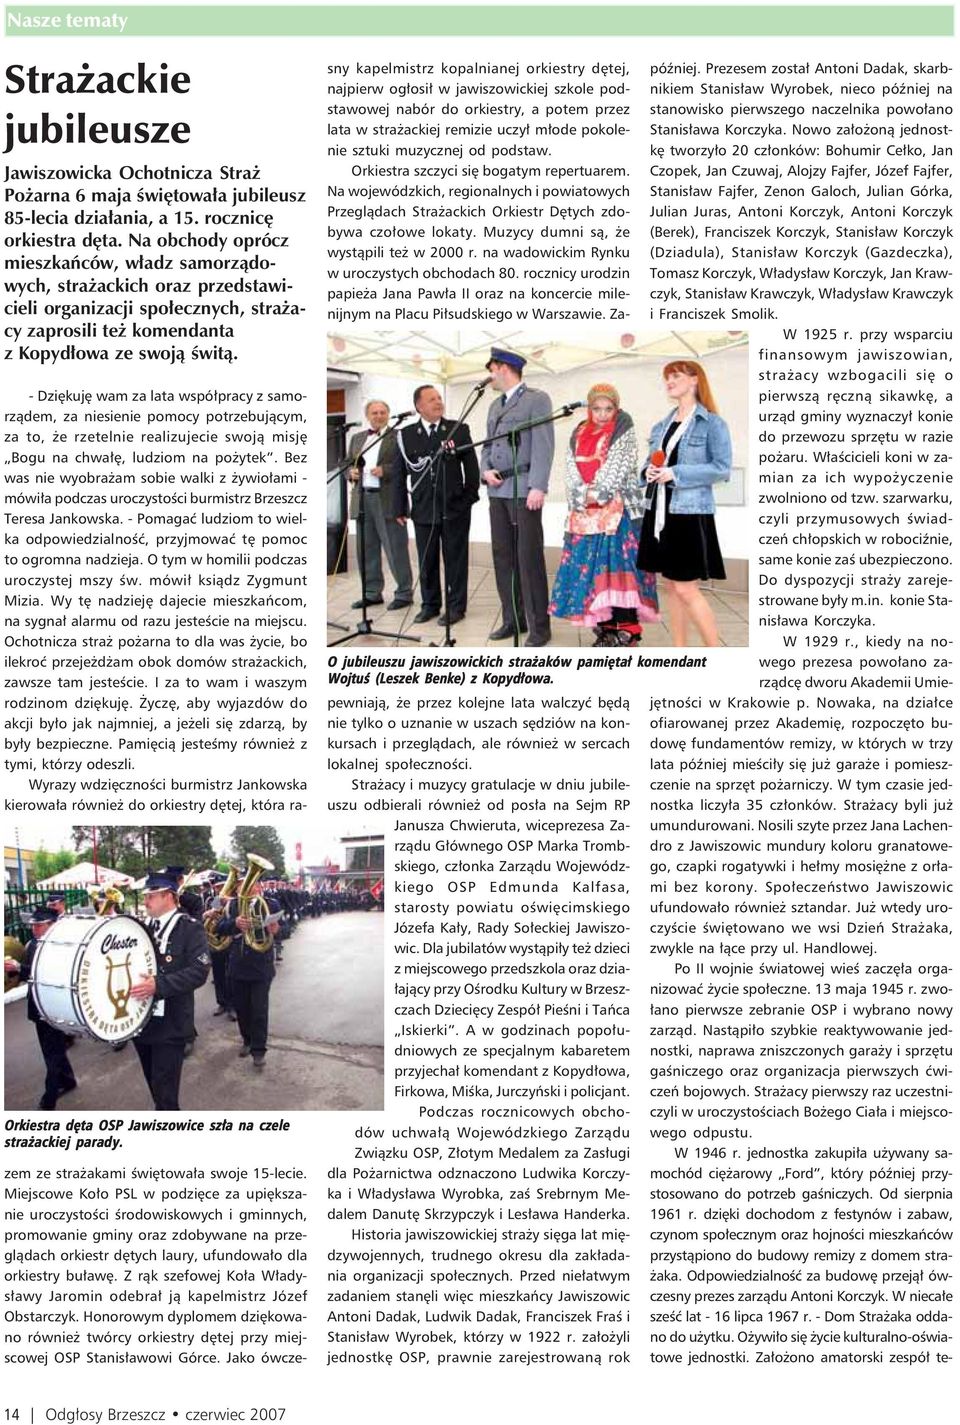 Orkiestra dęta OSP Jawiszowice szła na czele strażackiej parady.